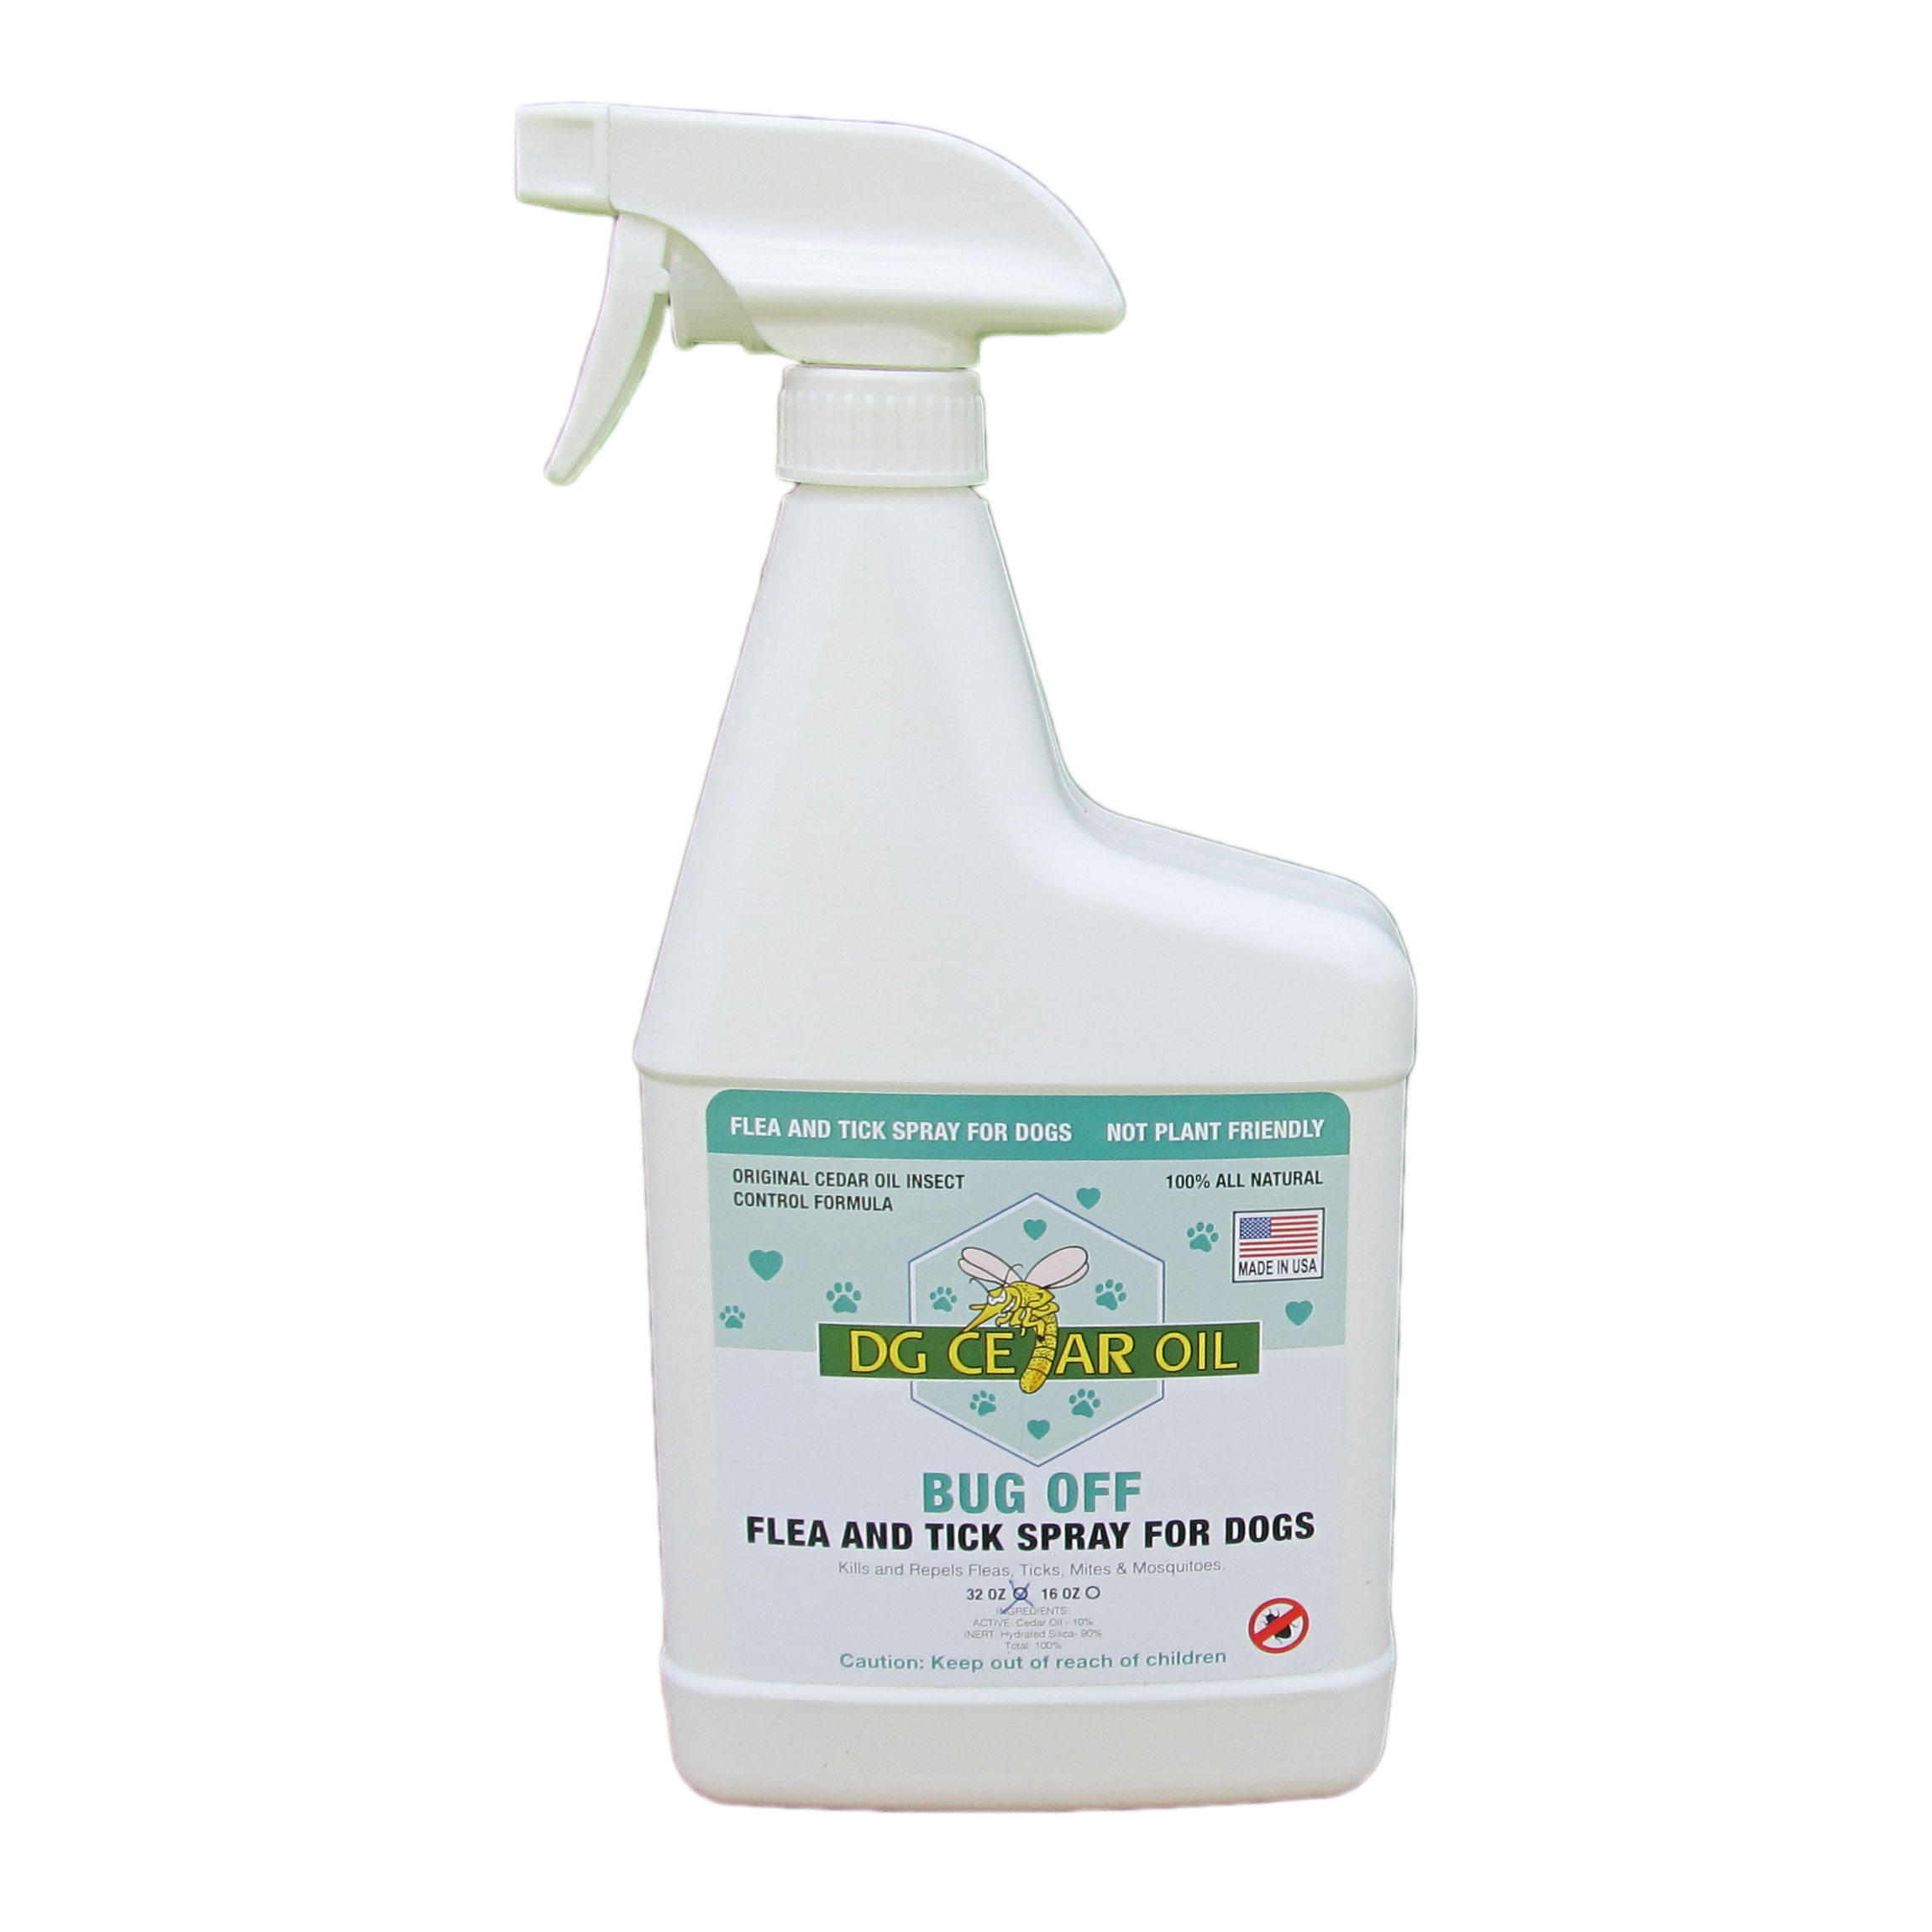 Flea and Tick Repellent Cedar Oil Spray for Dogs - 32 Ounce: DG Cedar Oil